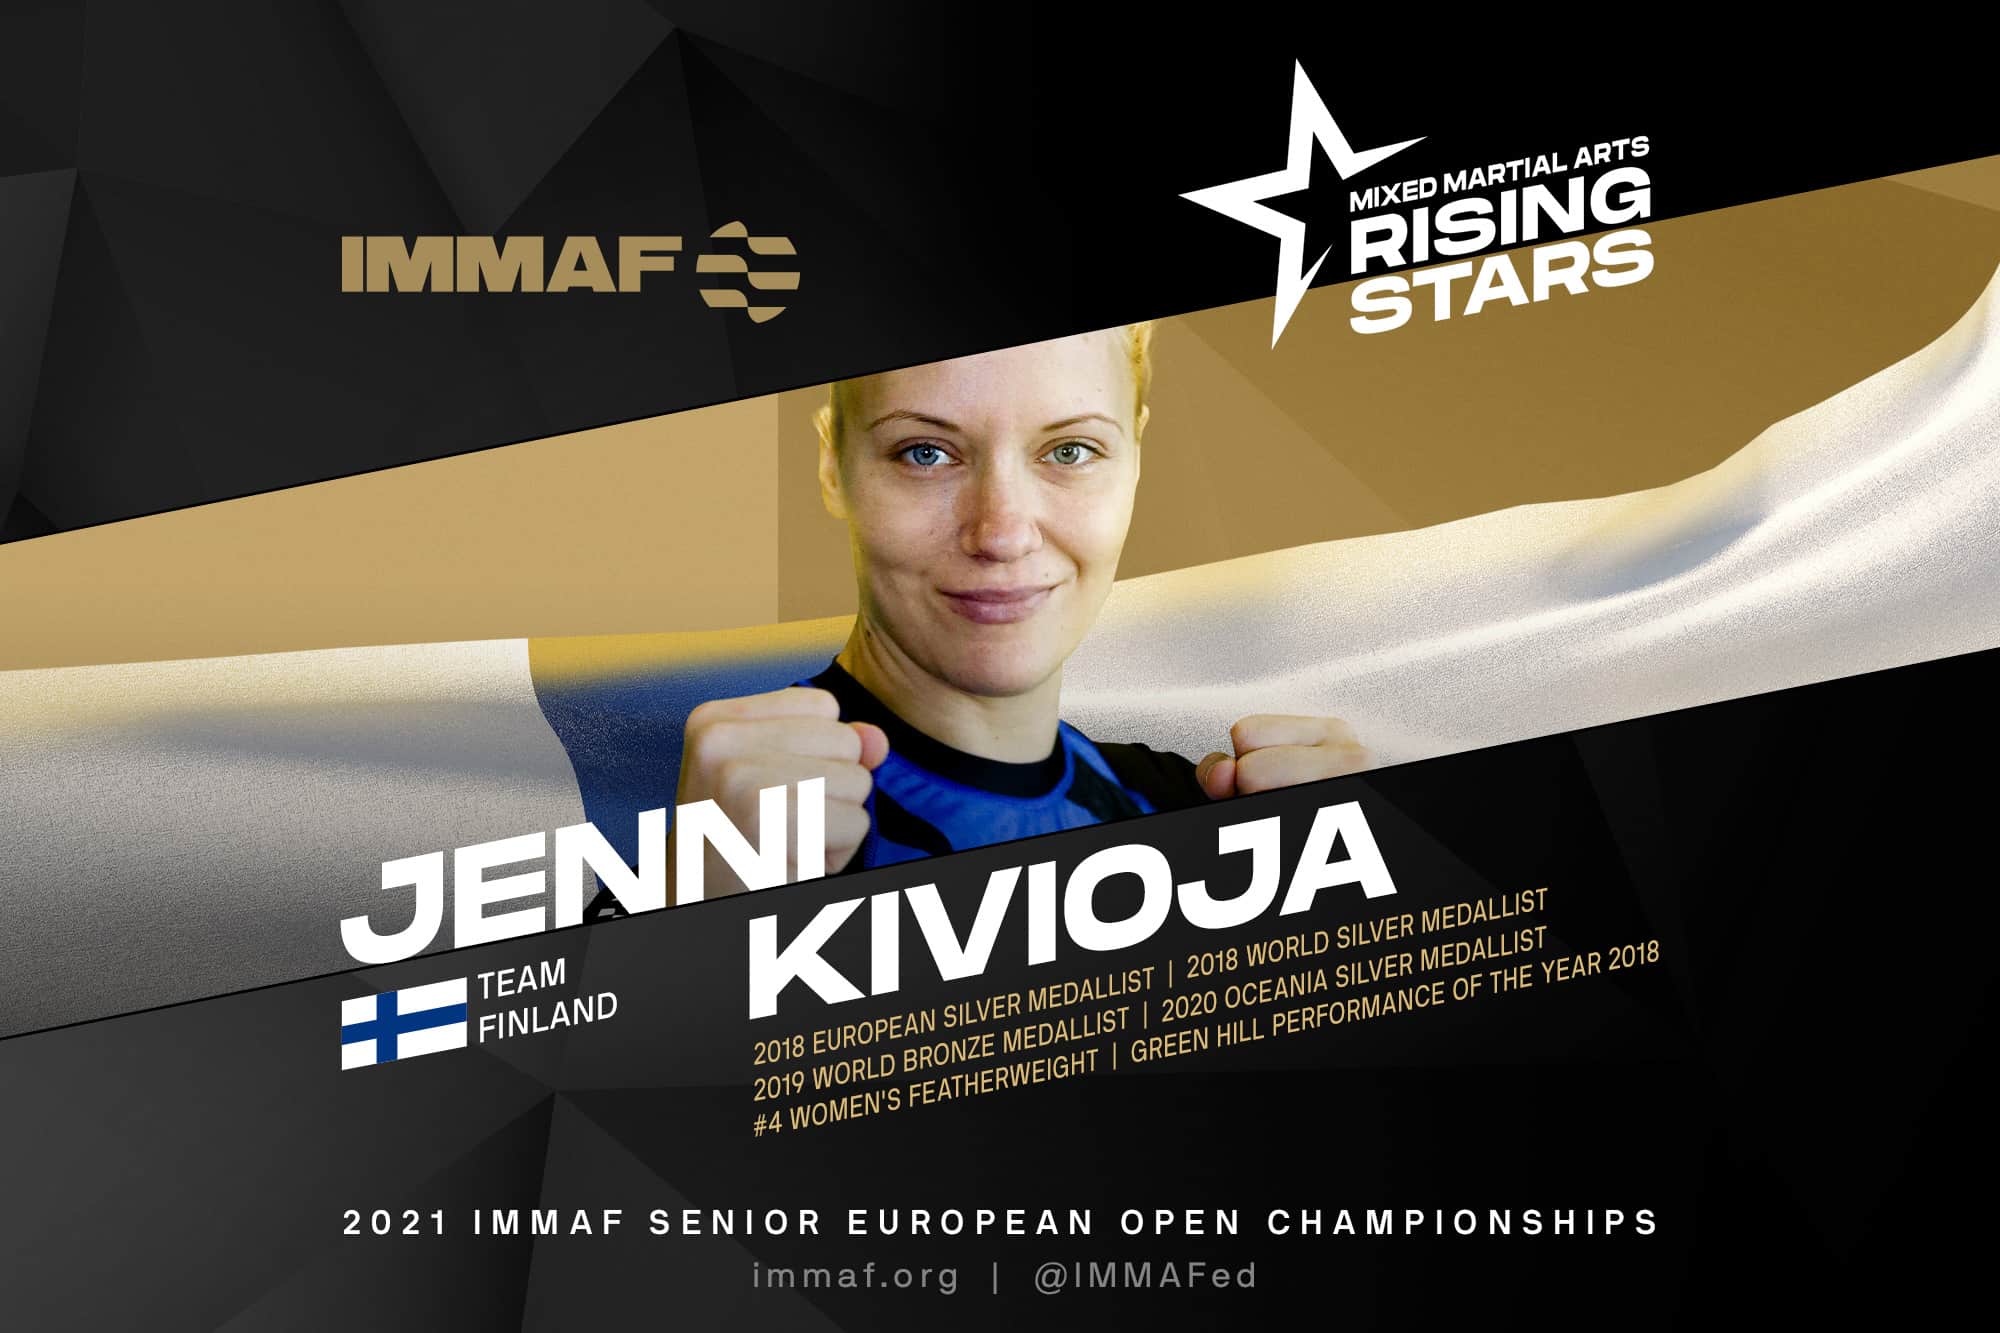 Former dancer & Rising MMA Star Kivioja returns for the IMMAF Euros